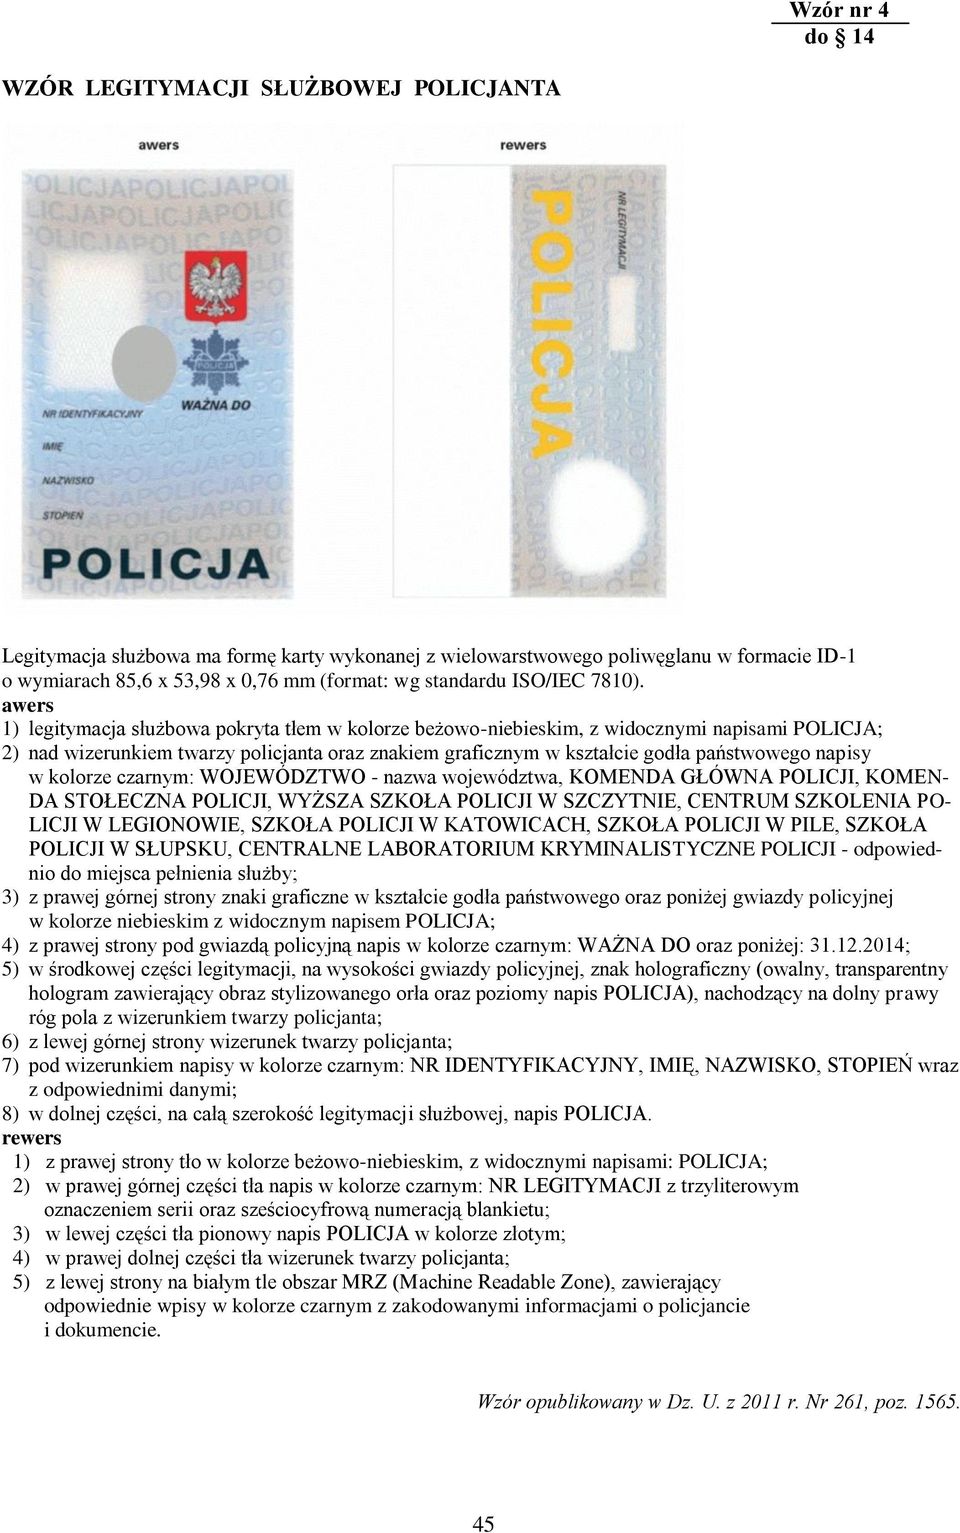 awers 1) legitymacja służbowa pokryta tłem w kolorze beżowo-niebieskim, z widocznymi napisami POLICJA; 2) nad wizerunkiem twarzy policjanta oraz znakiem graficznym w kształcie godła państwowego